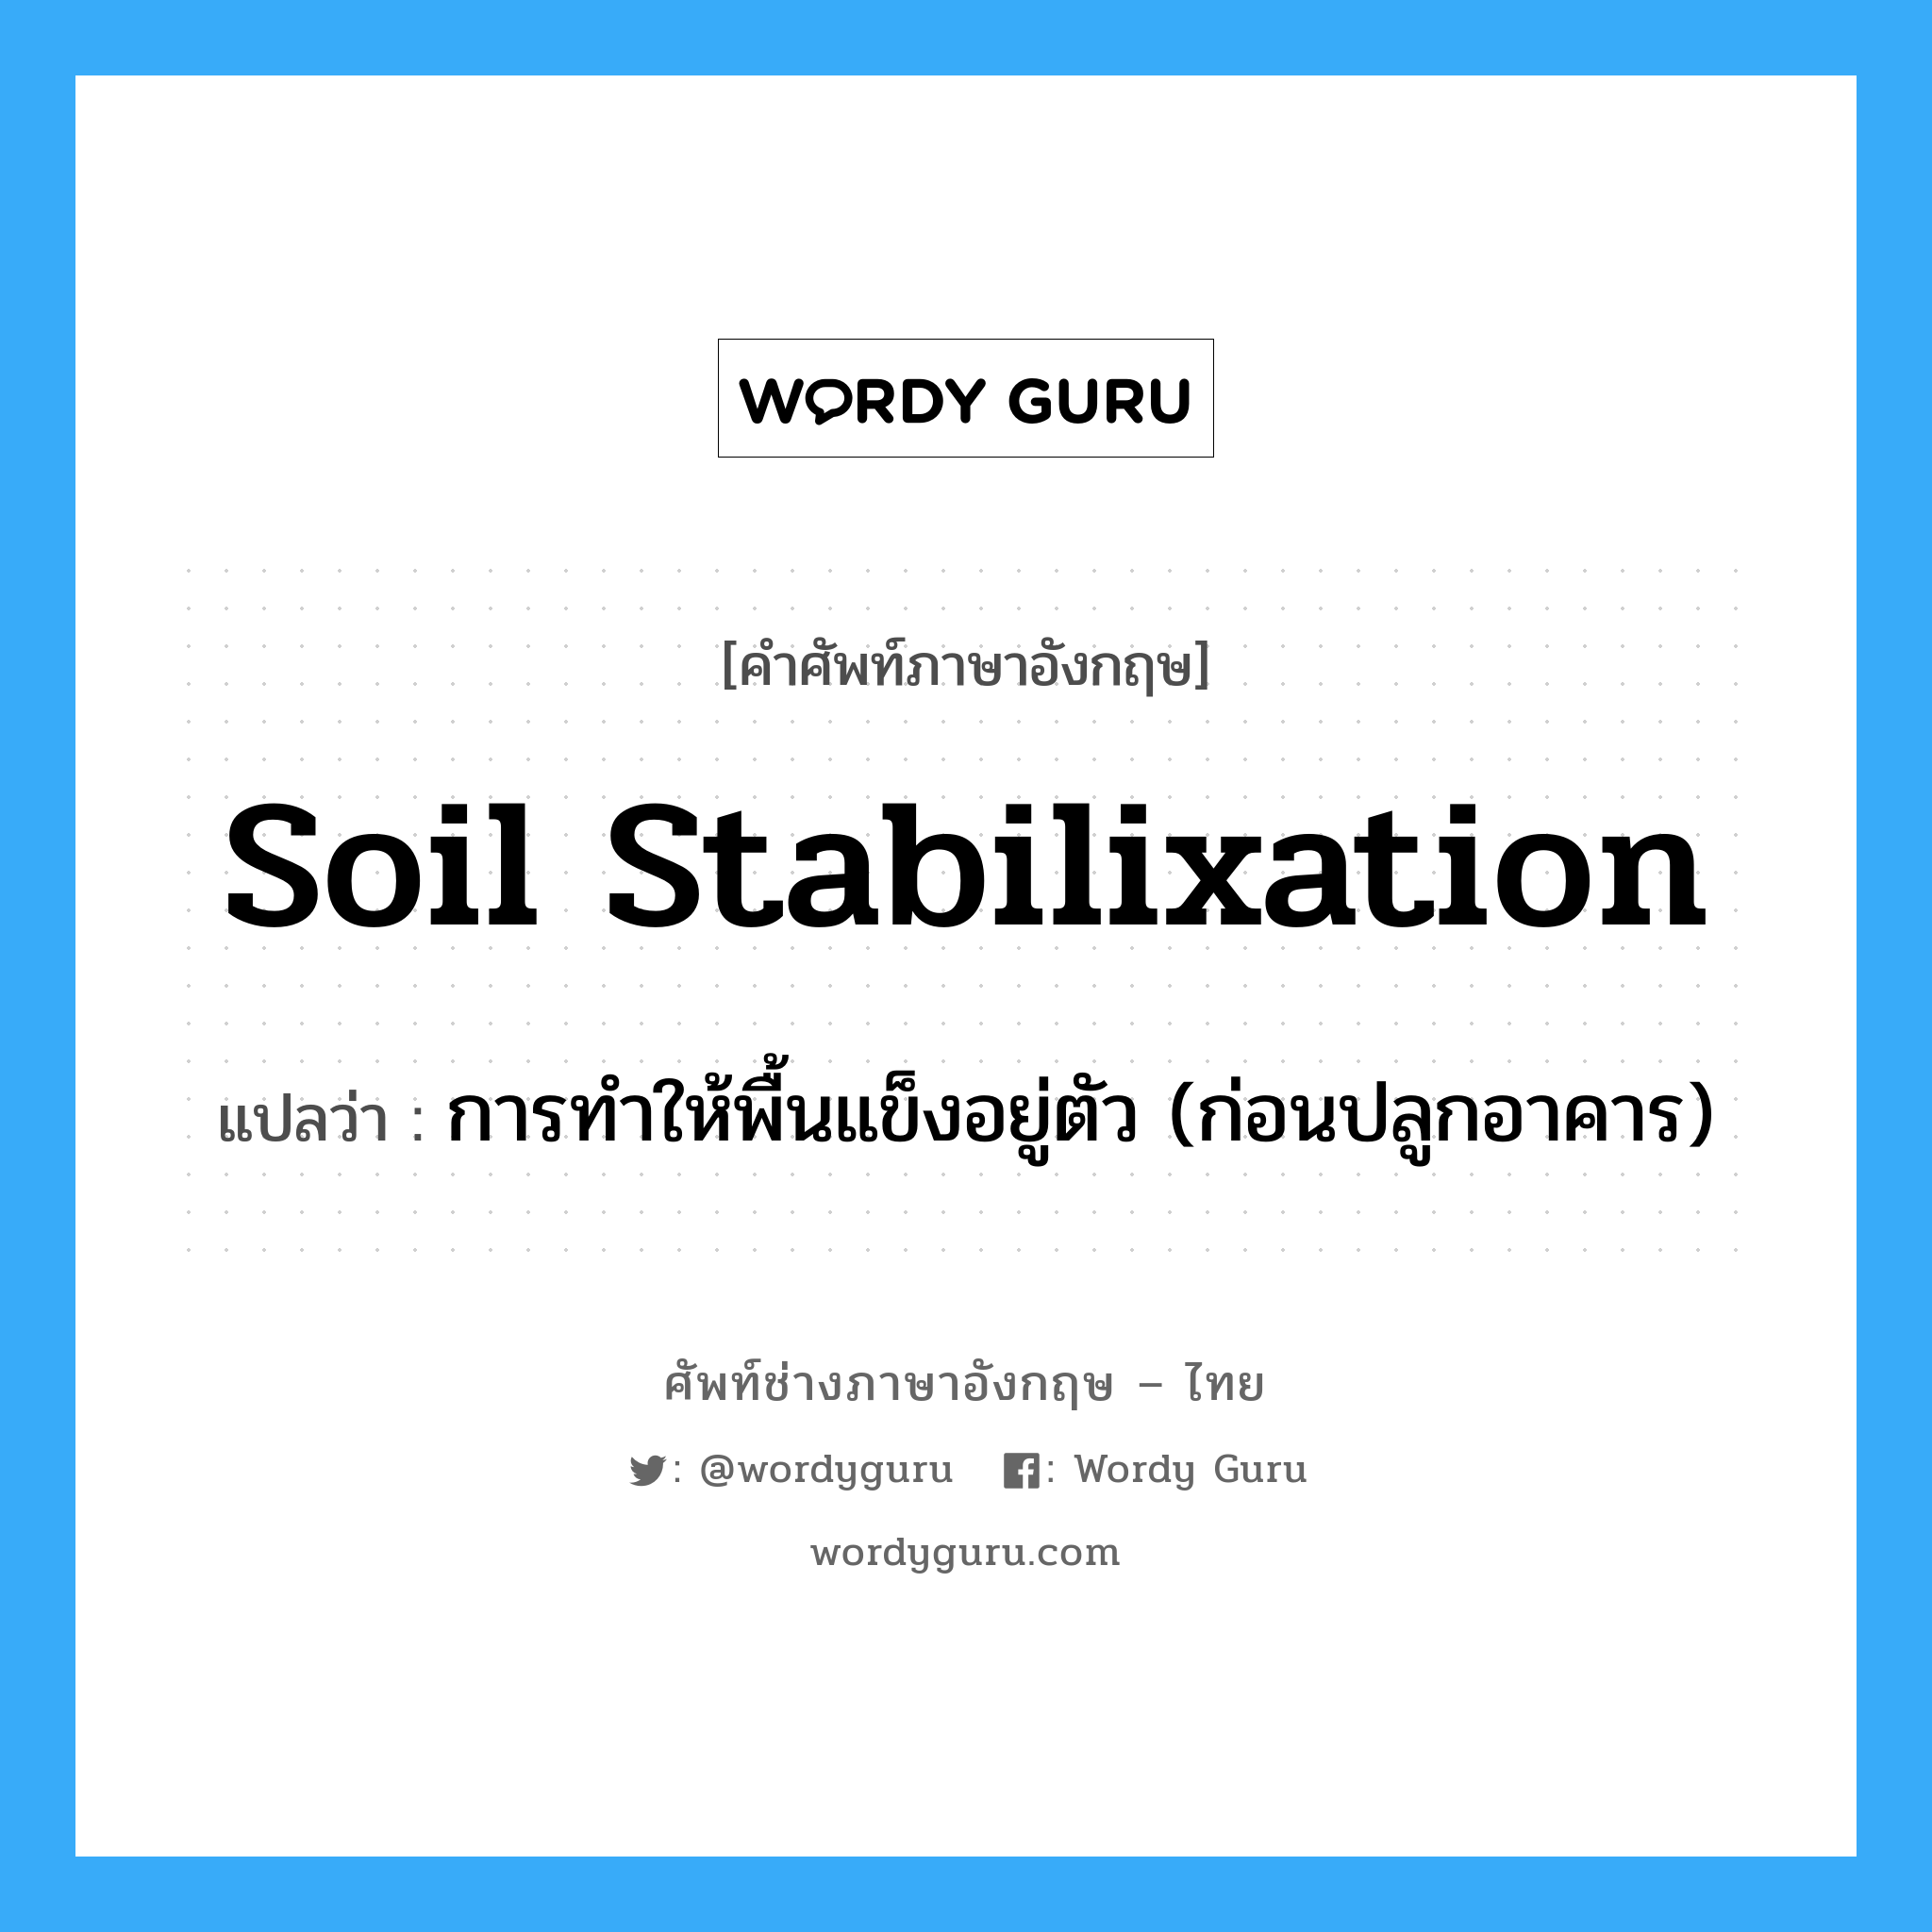 soil stabilixation แปลว่า?, คำศัพท์ช่างภาษาอังกฤษ - ไทย soil stabilixation คำศัพท์ภาษาอังกฤษ soil stabilixation แปลว่า การทำให้พื้นแข็งอยู่ตัว (ก่อนปลูกอาคาร)